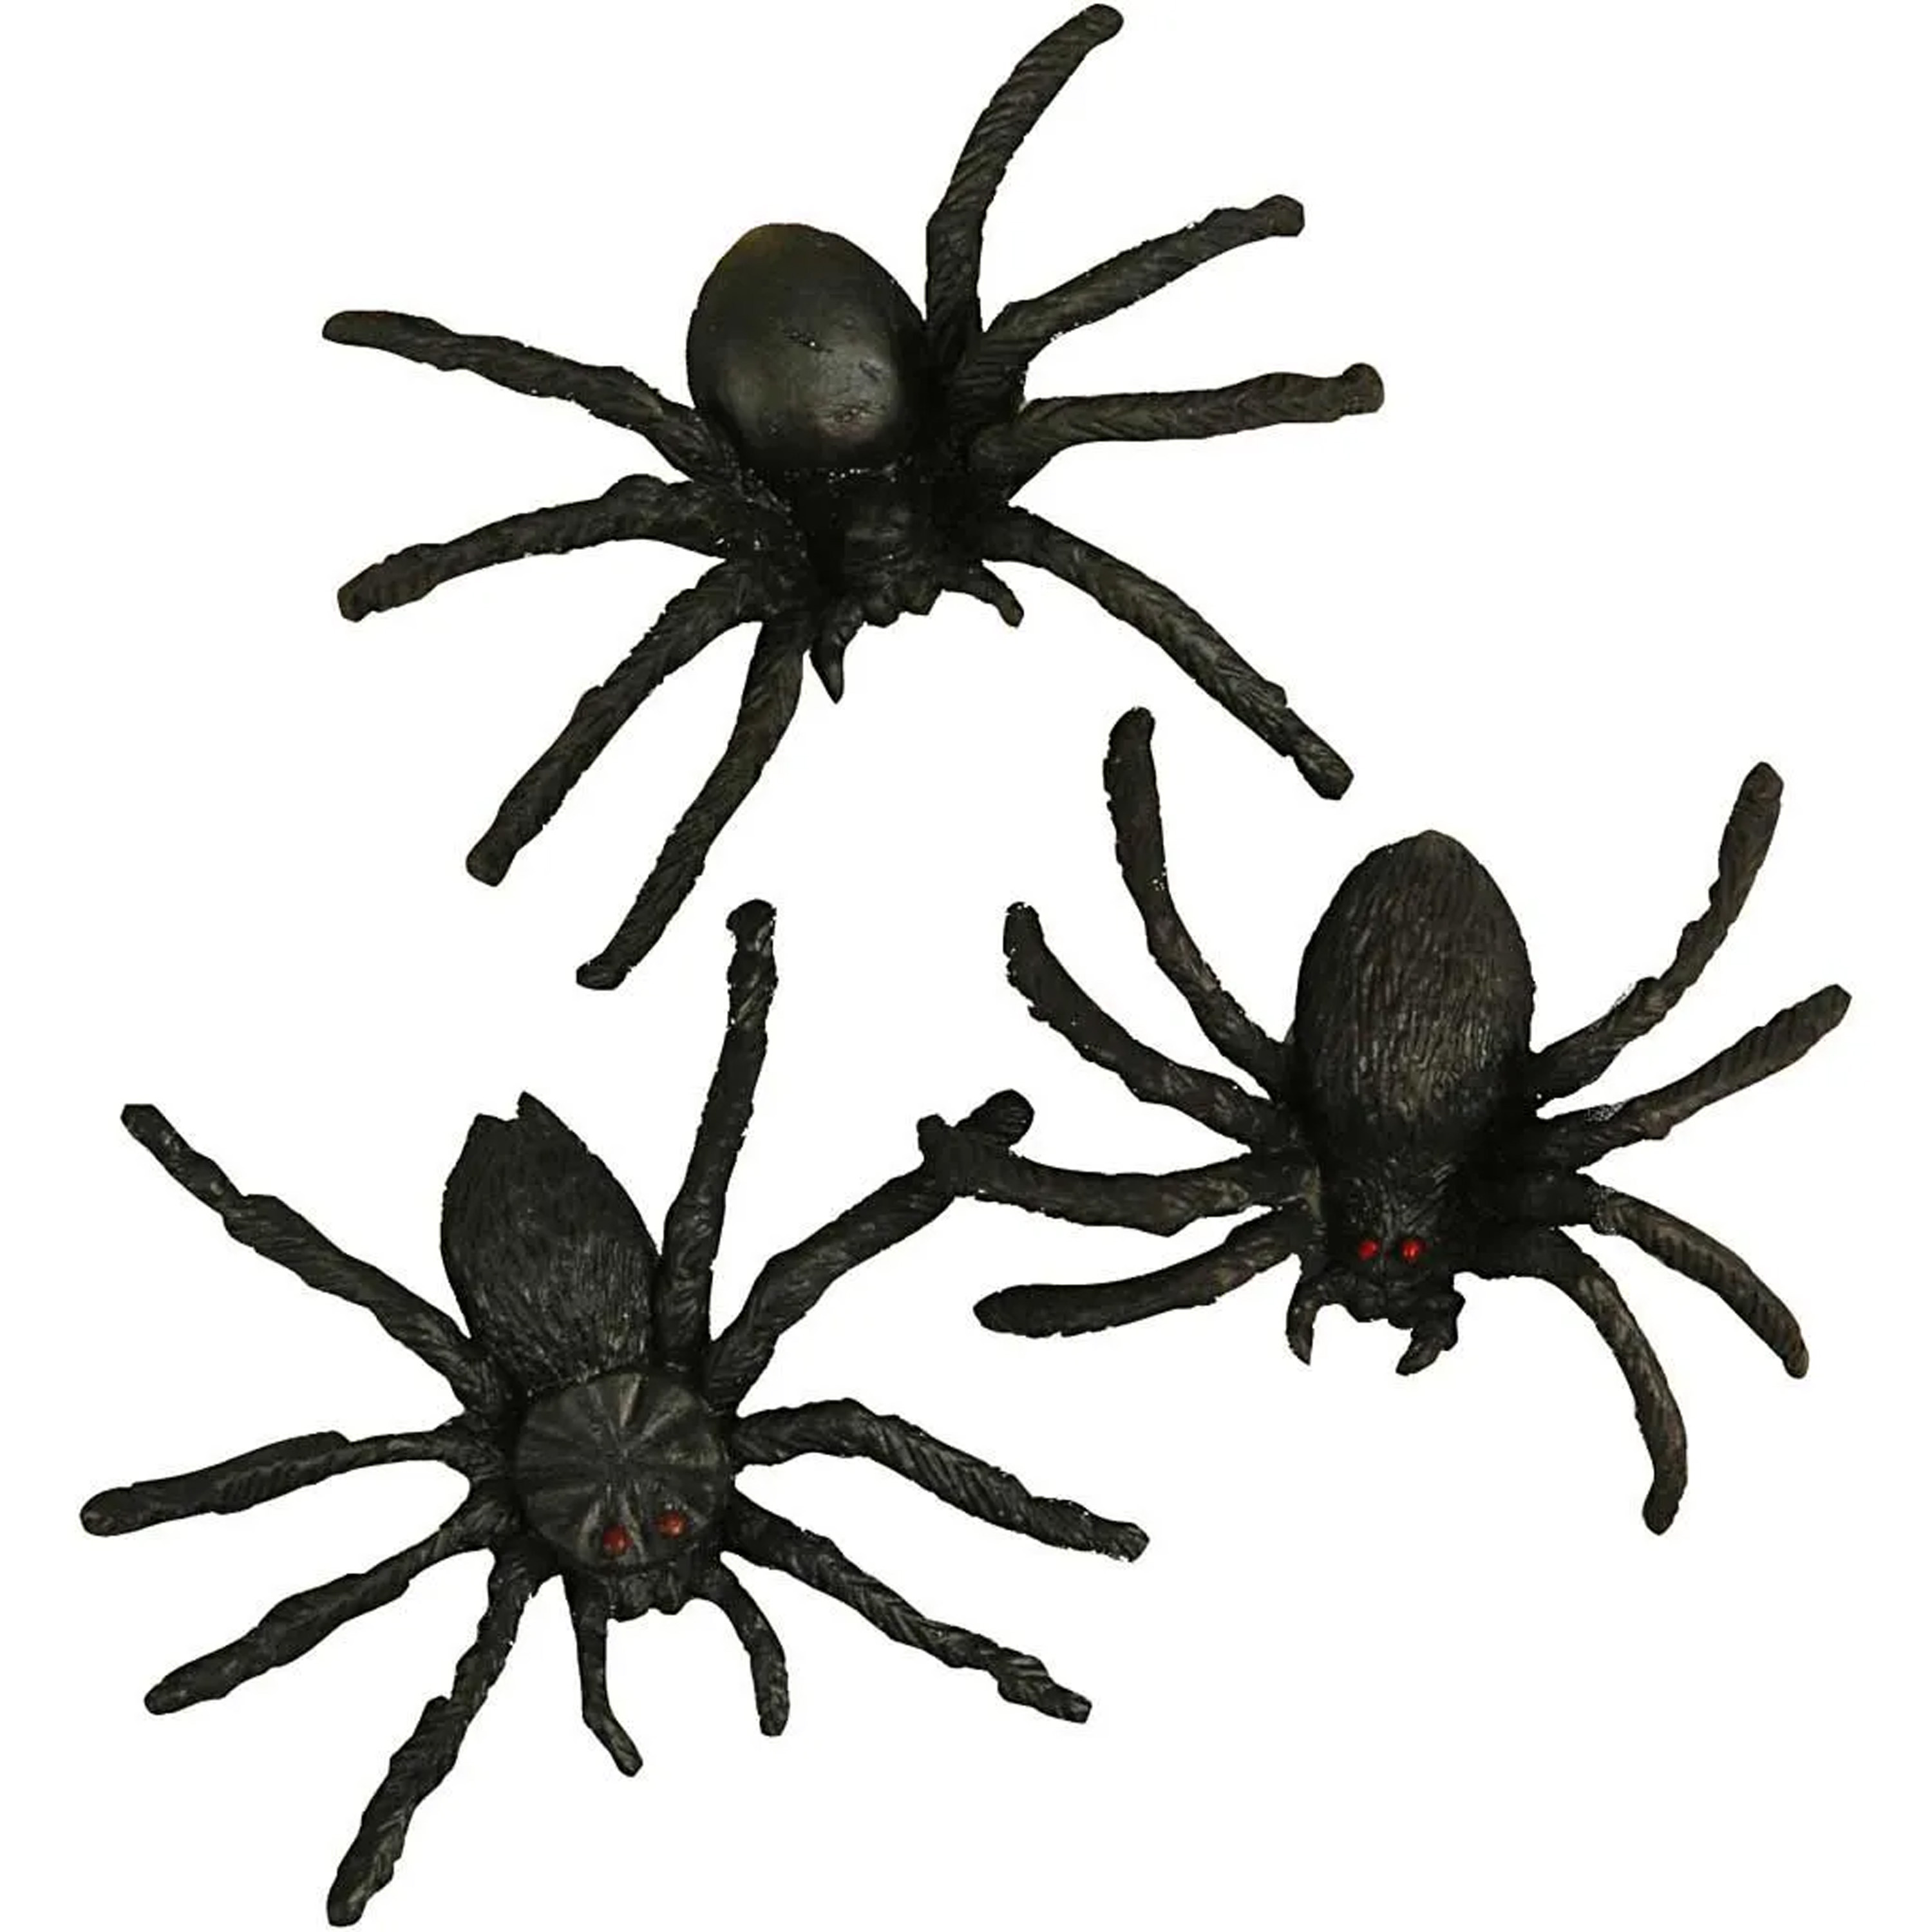 Creativ nep spinnen/spinnetjes 4 cm - zwart - 10x stuks - Horror/griezel thema decoratie beestjes